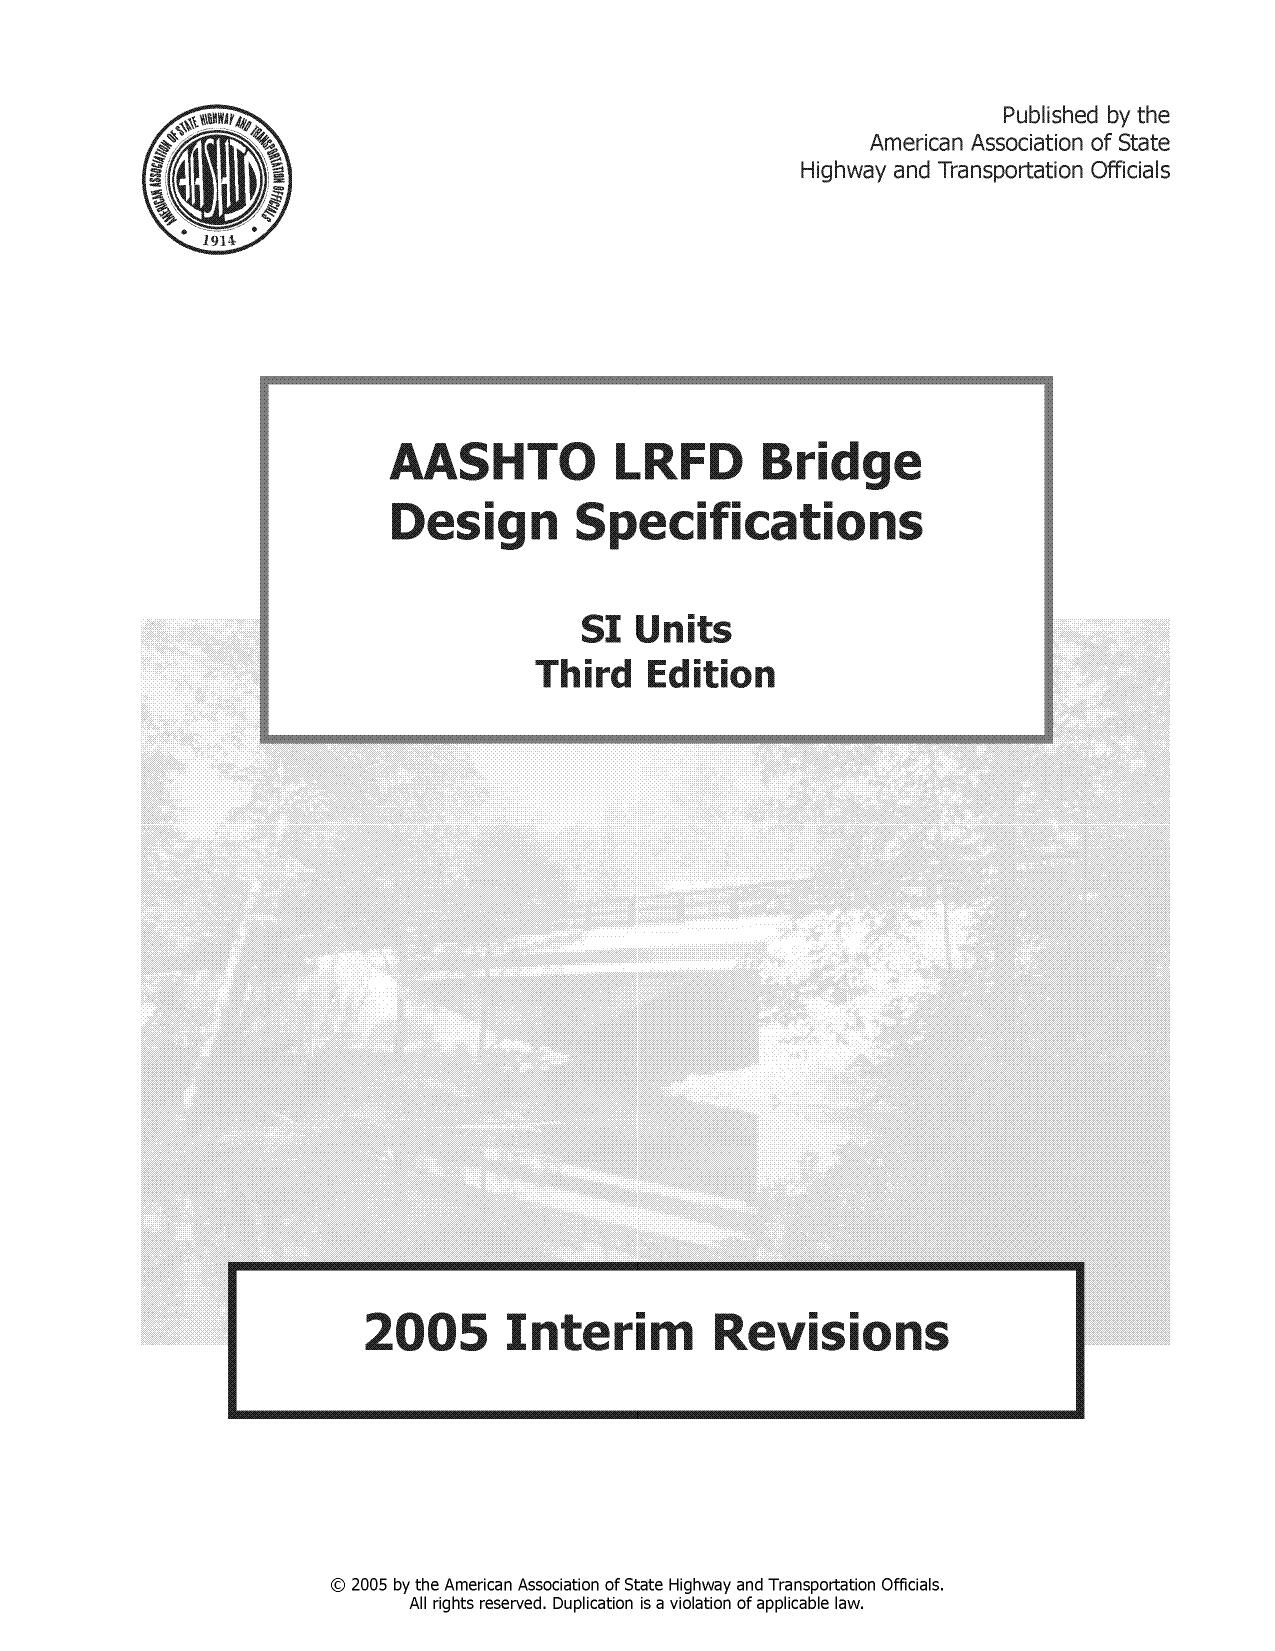 AASHTO LRFD Bridge 2005 Full Edition-SI.TIF